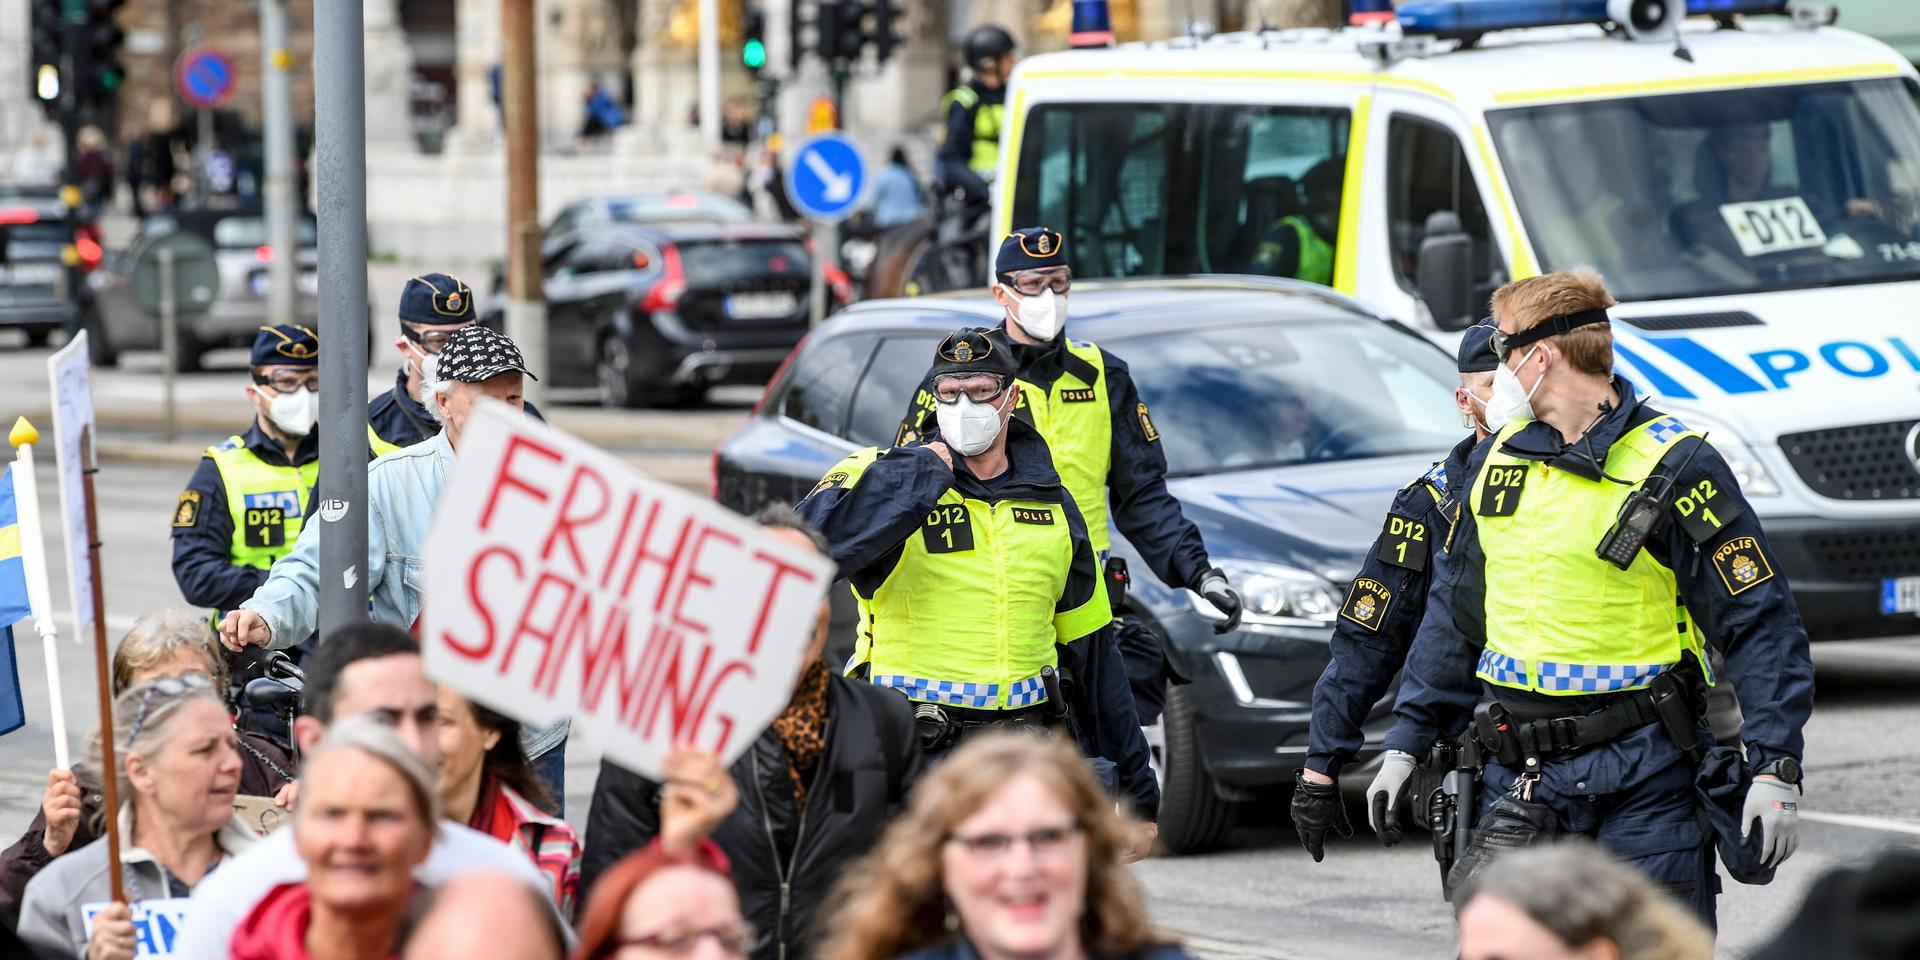 STOCKHOLM 20210515
Demonstranter protesterar mot vaccin och coronarestriktioner i centrala Stockholm på söndagen. Demonstrationen som startade i Kungsträdgården upplöstes senare av polis på grund av pandemireglerna om offentliga sammankomster. 
Foto: Fredrik Sandberg / TT / kod 10080